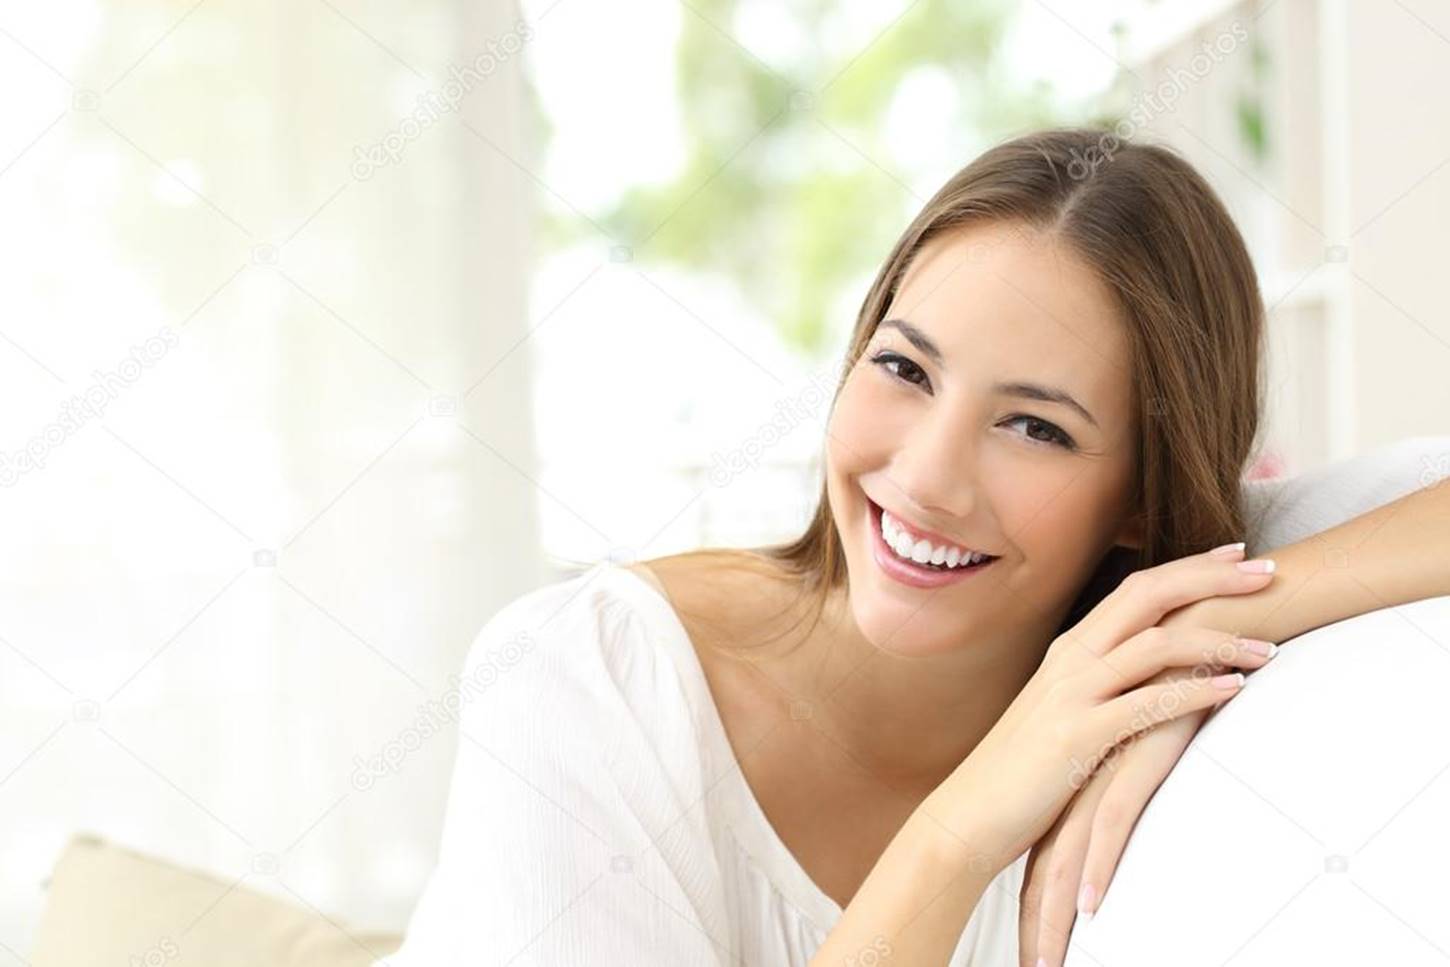 3 tratamentos caseiros de beleza que toda mulher deveria conhecer